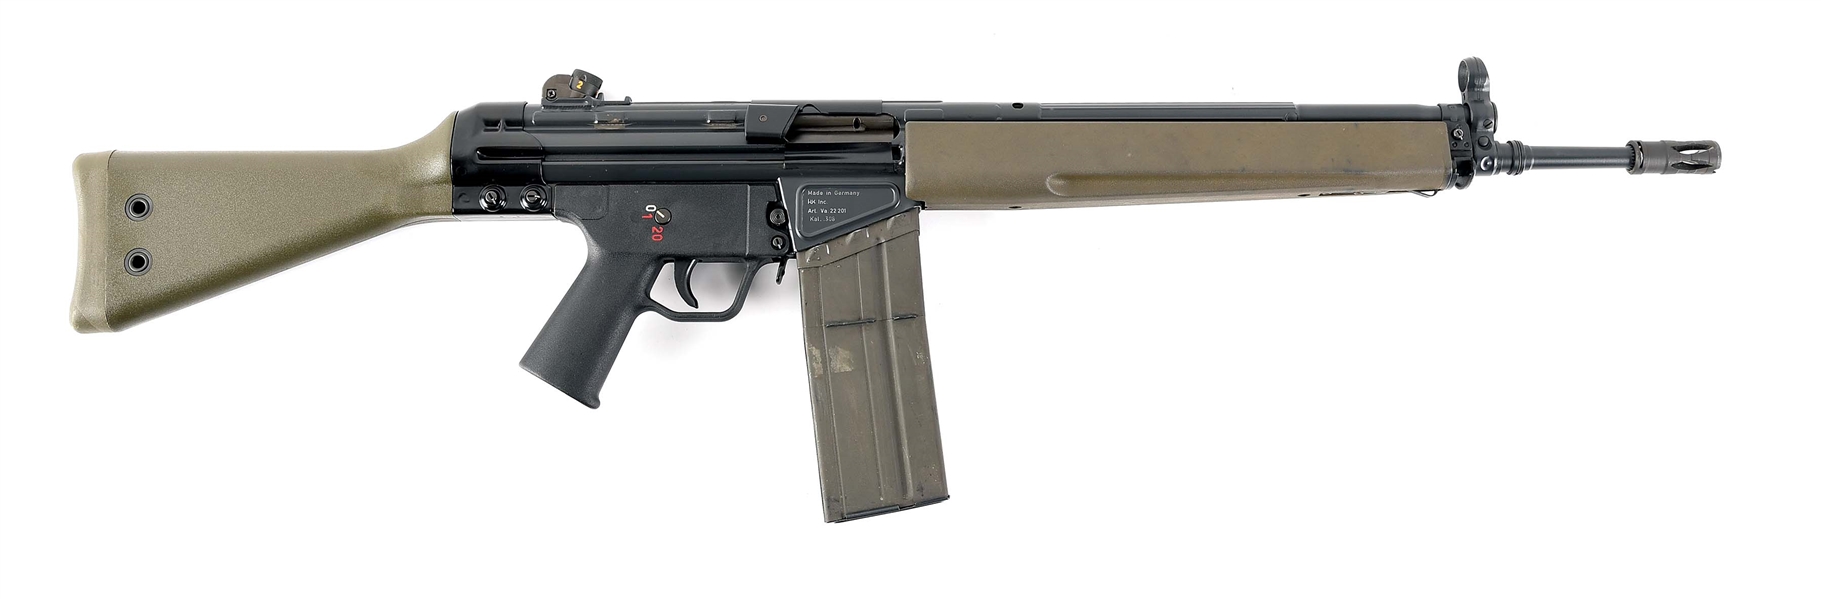 (N) HECKLER & KOCH MODEL G3FS MACHINE GUN (PRE-86 DEALER SAMPLE).